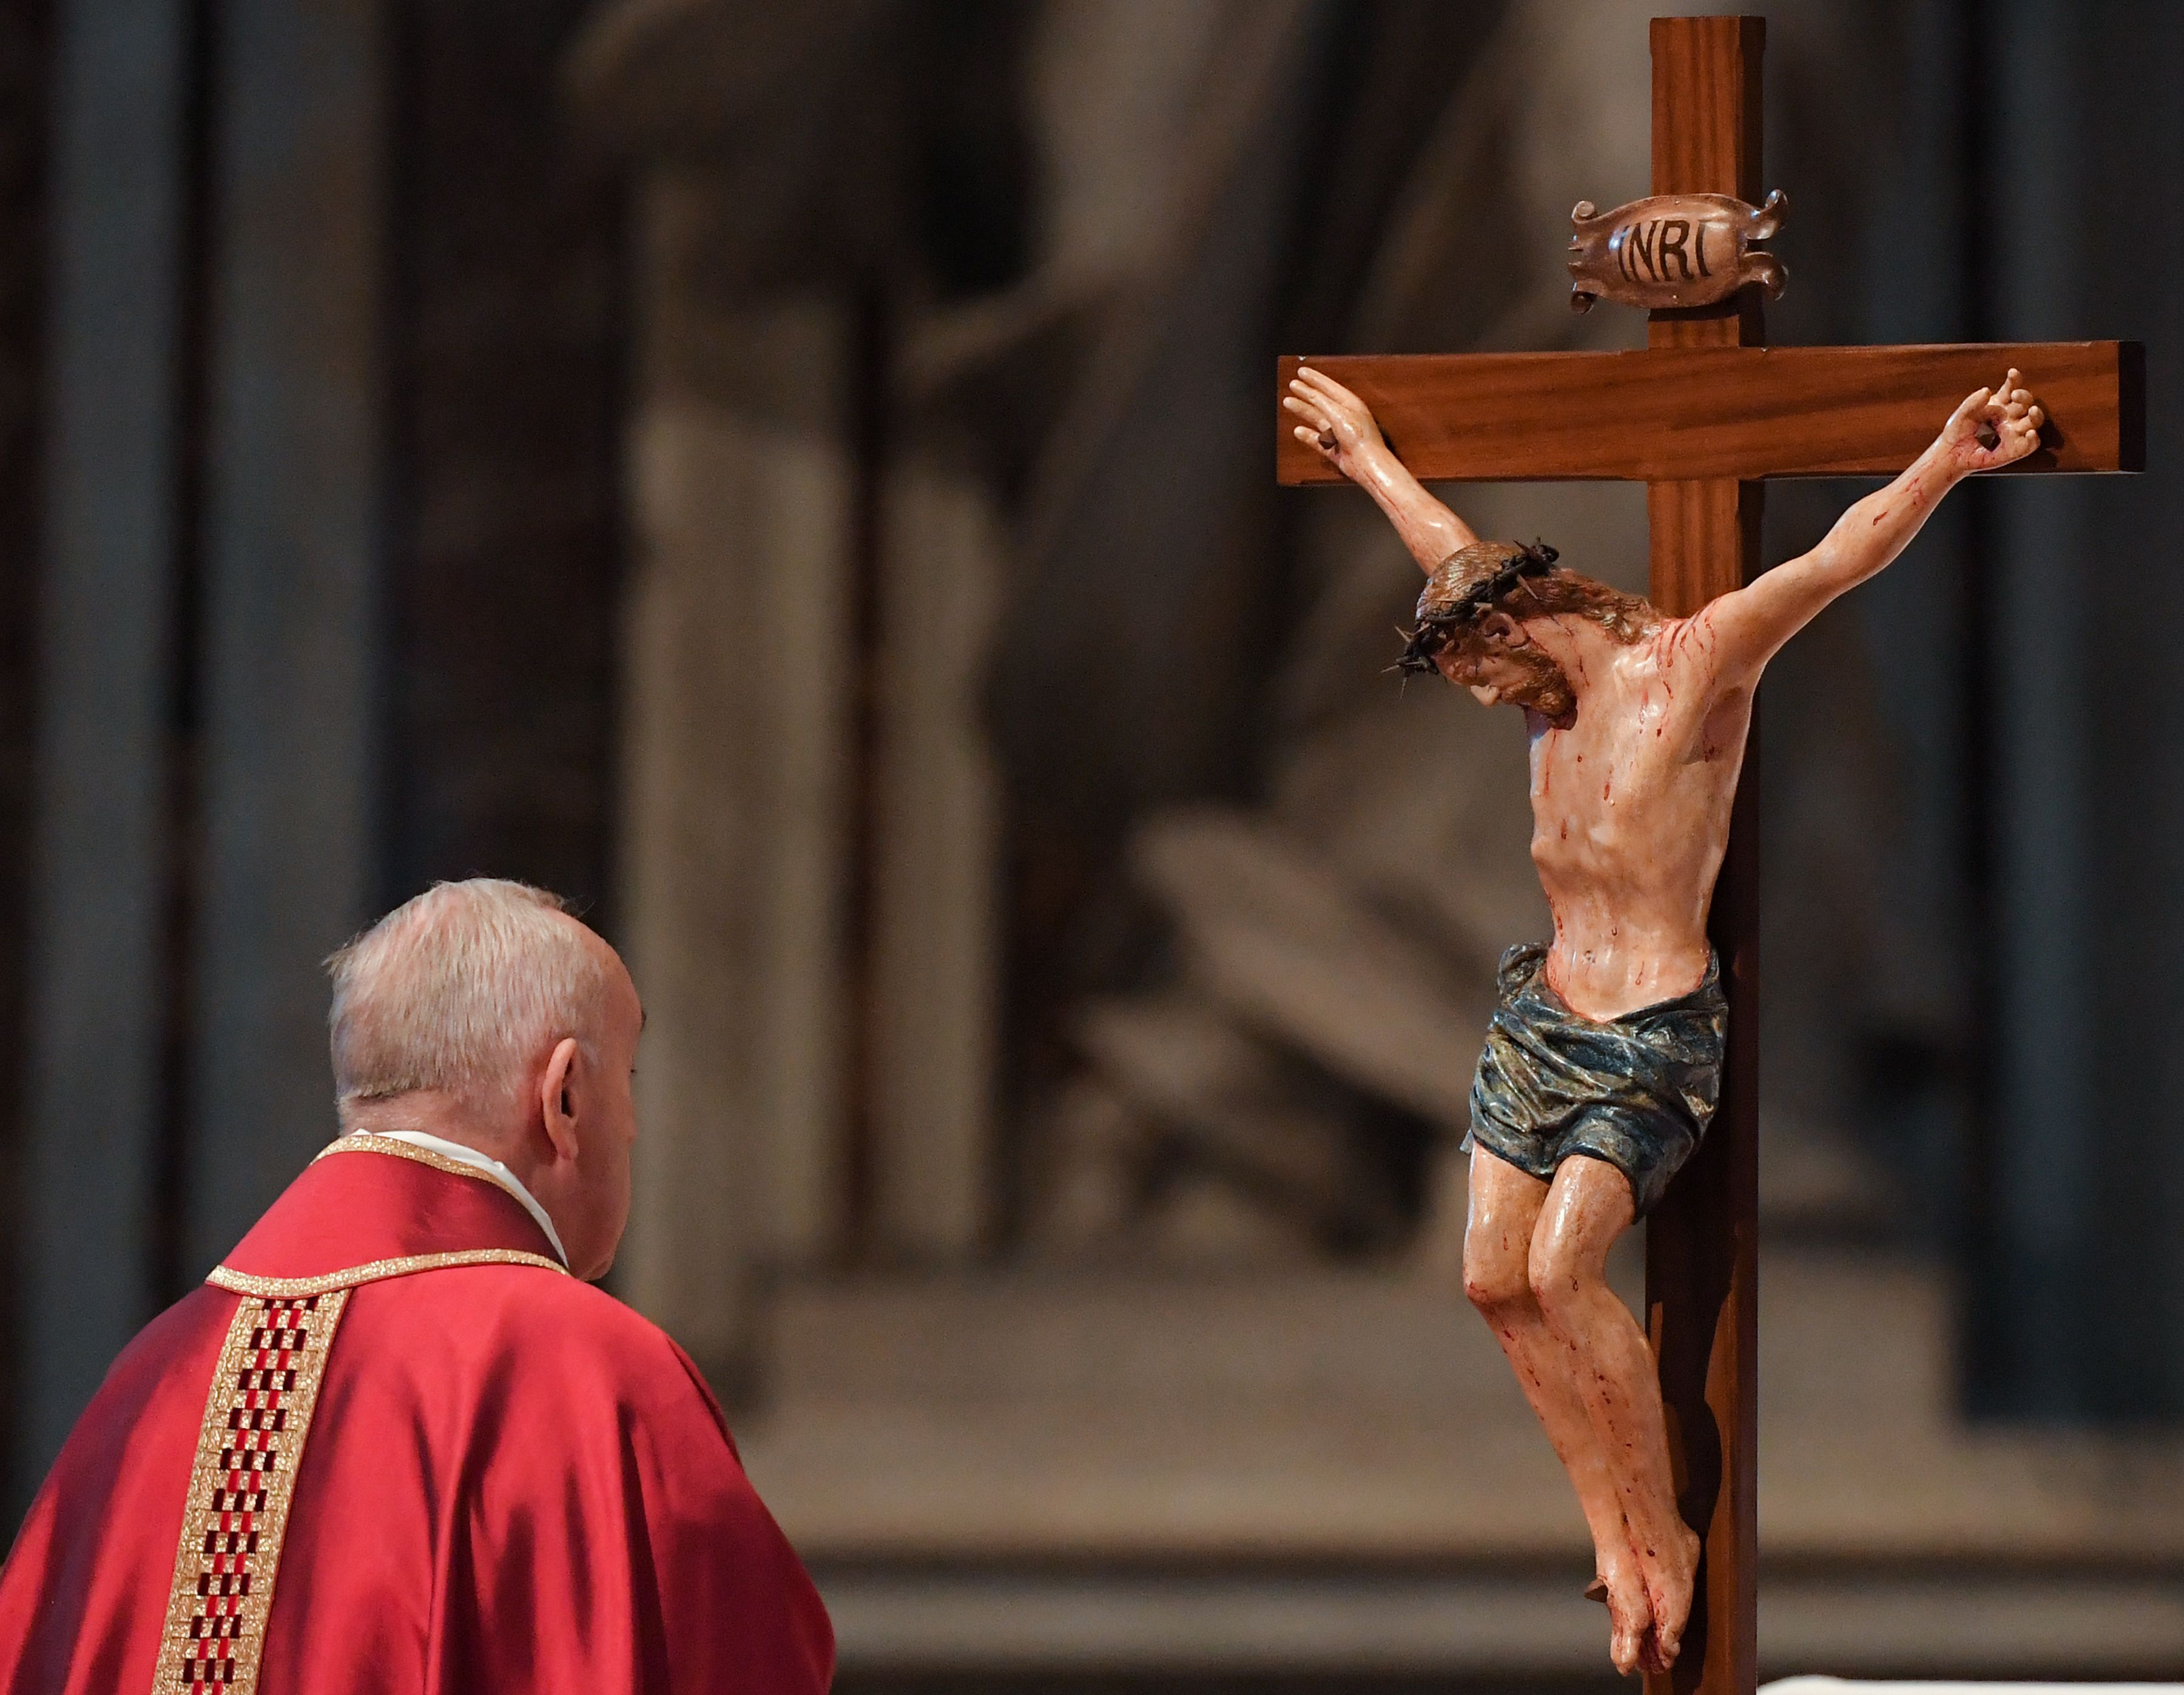 El Papa Francisco observa un crucifijo durante la Celebración de la Pasión del Señor el Viernes Santo en la Basílica de San Pedro, el 19 de abril de 2019 en el Vaticano.